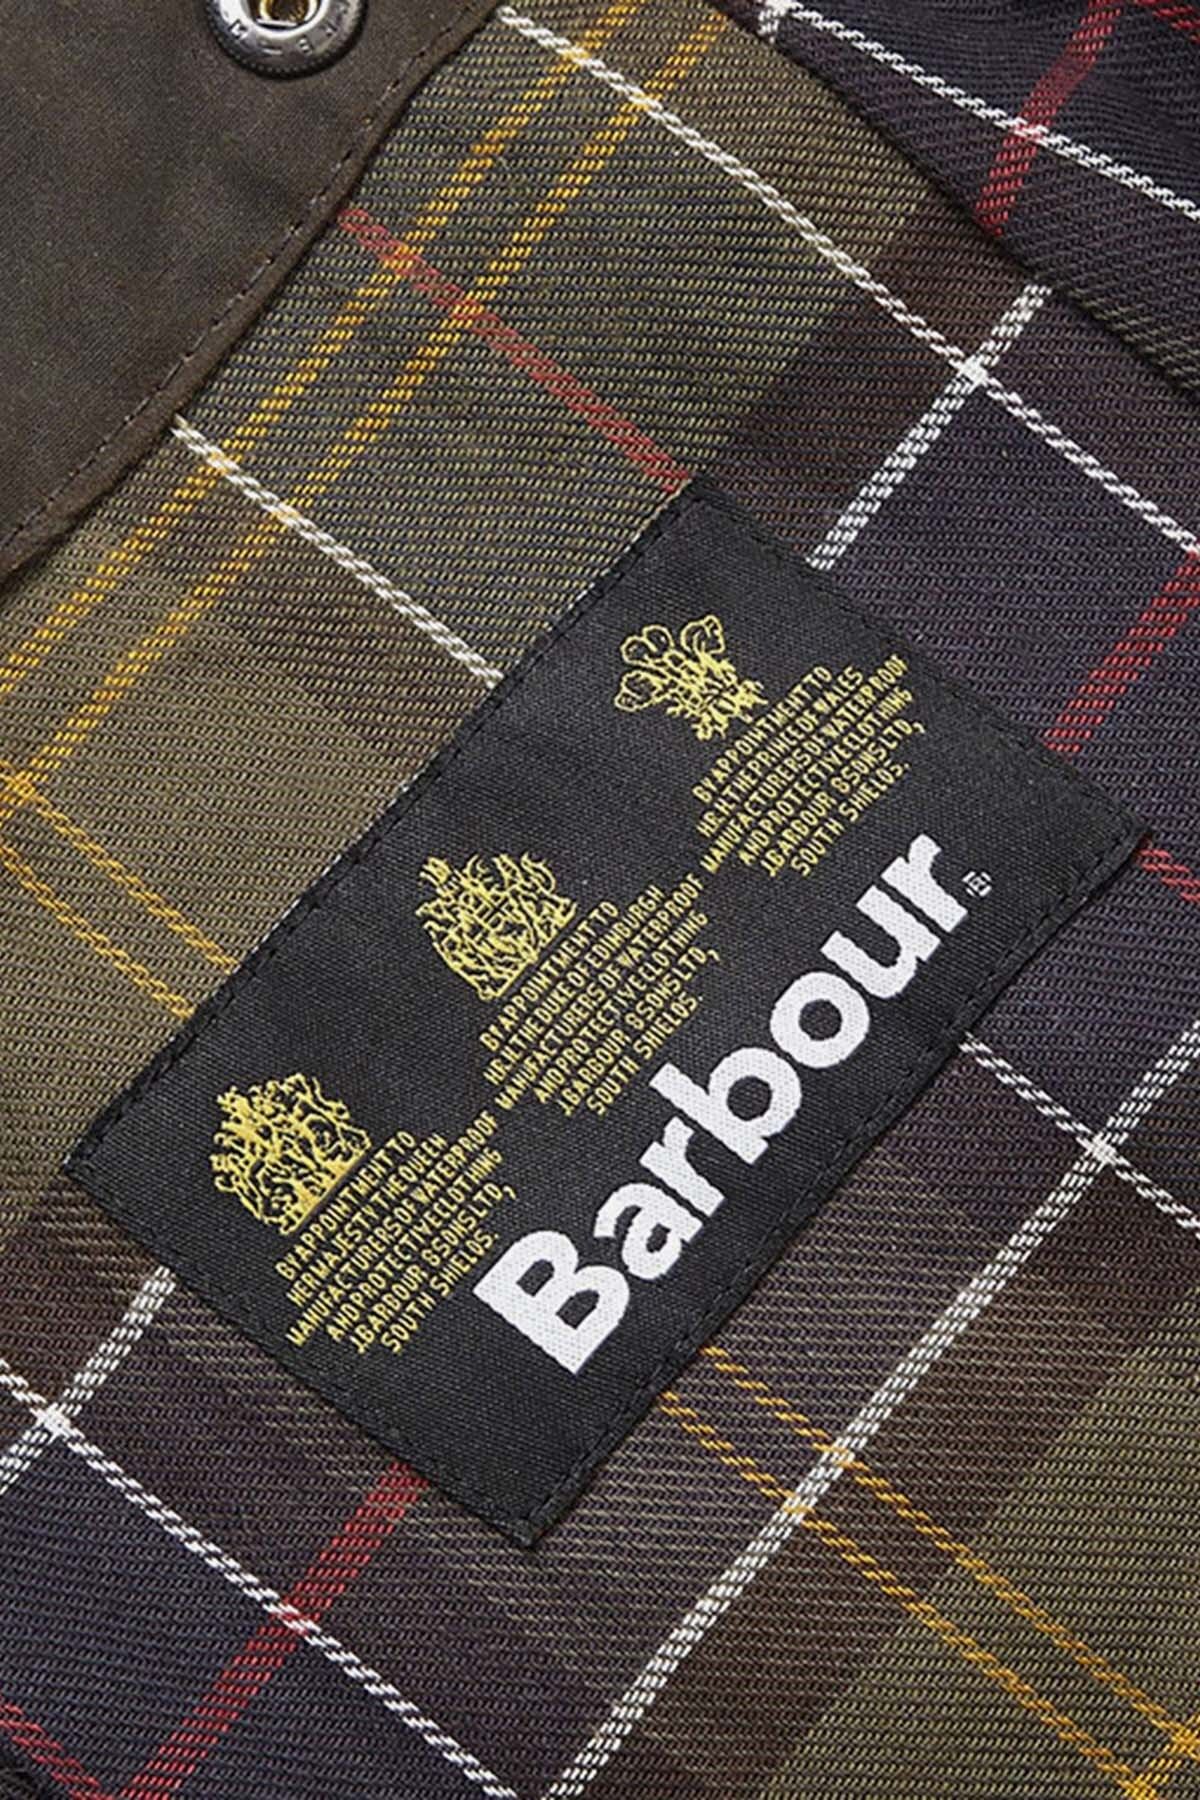 Barbour Oil Kapüşon سازگار با کت های کلاسیک BE71 زیتون